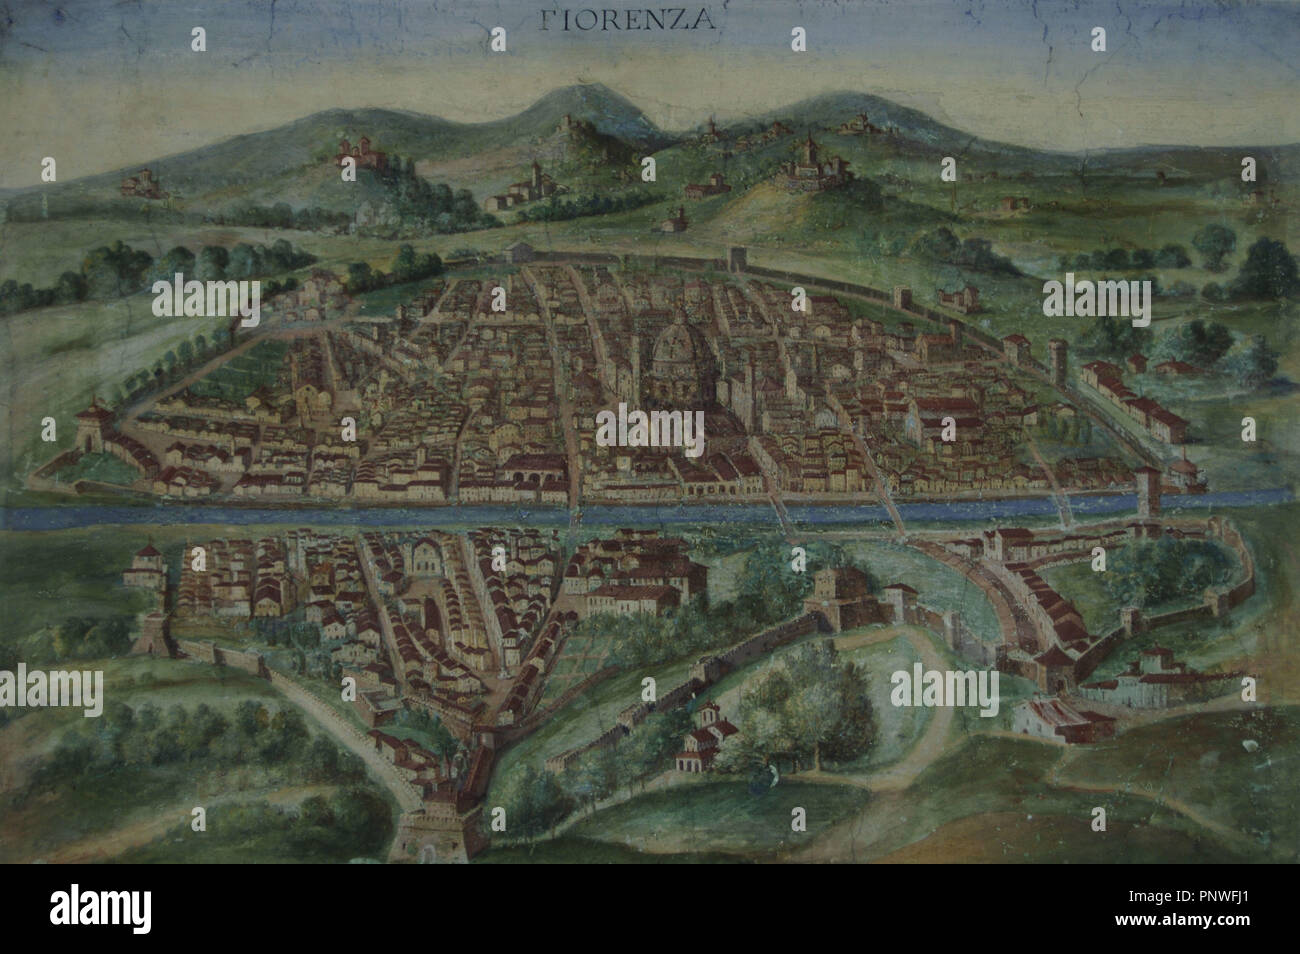 Italia. Florencia. Mapa de la ciudad en el siglo XVI. Galería de Mapas. Museos Vaticanos. Estado del Vaticano. Foto de stock